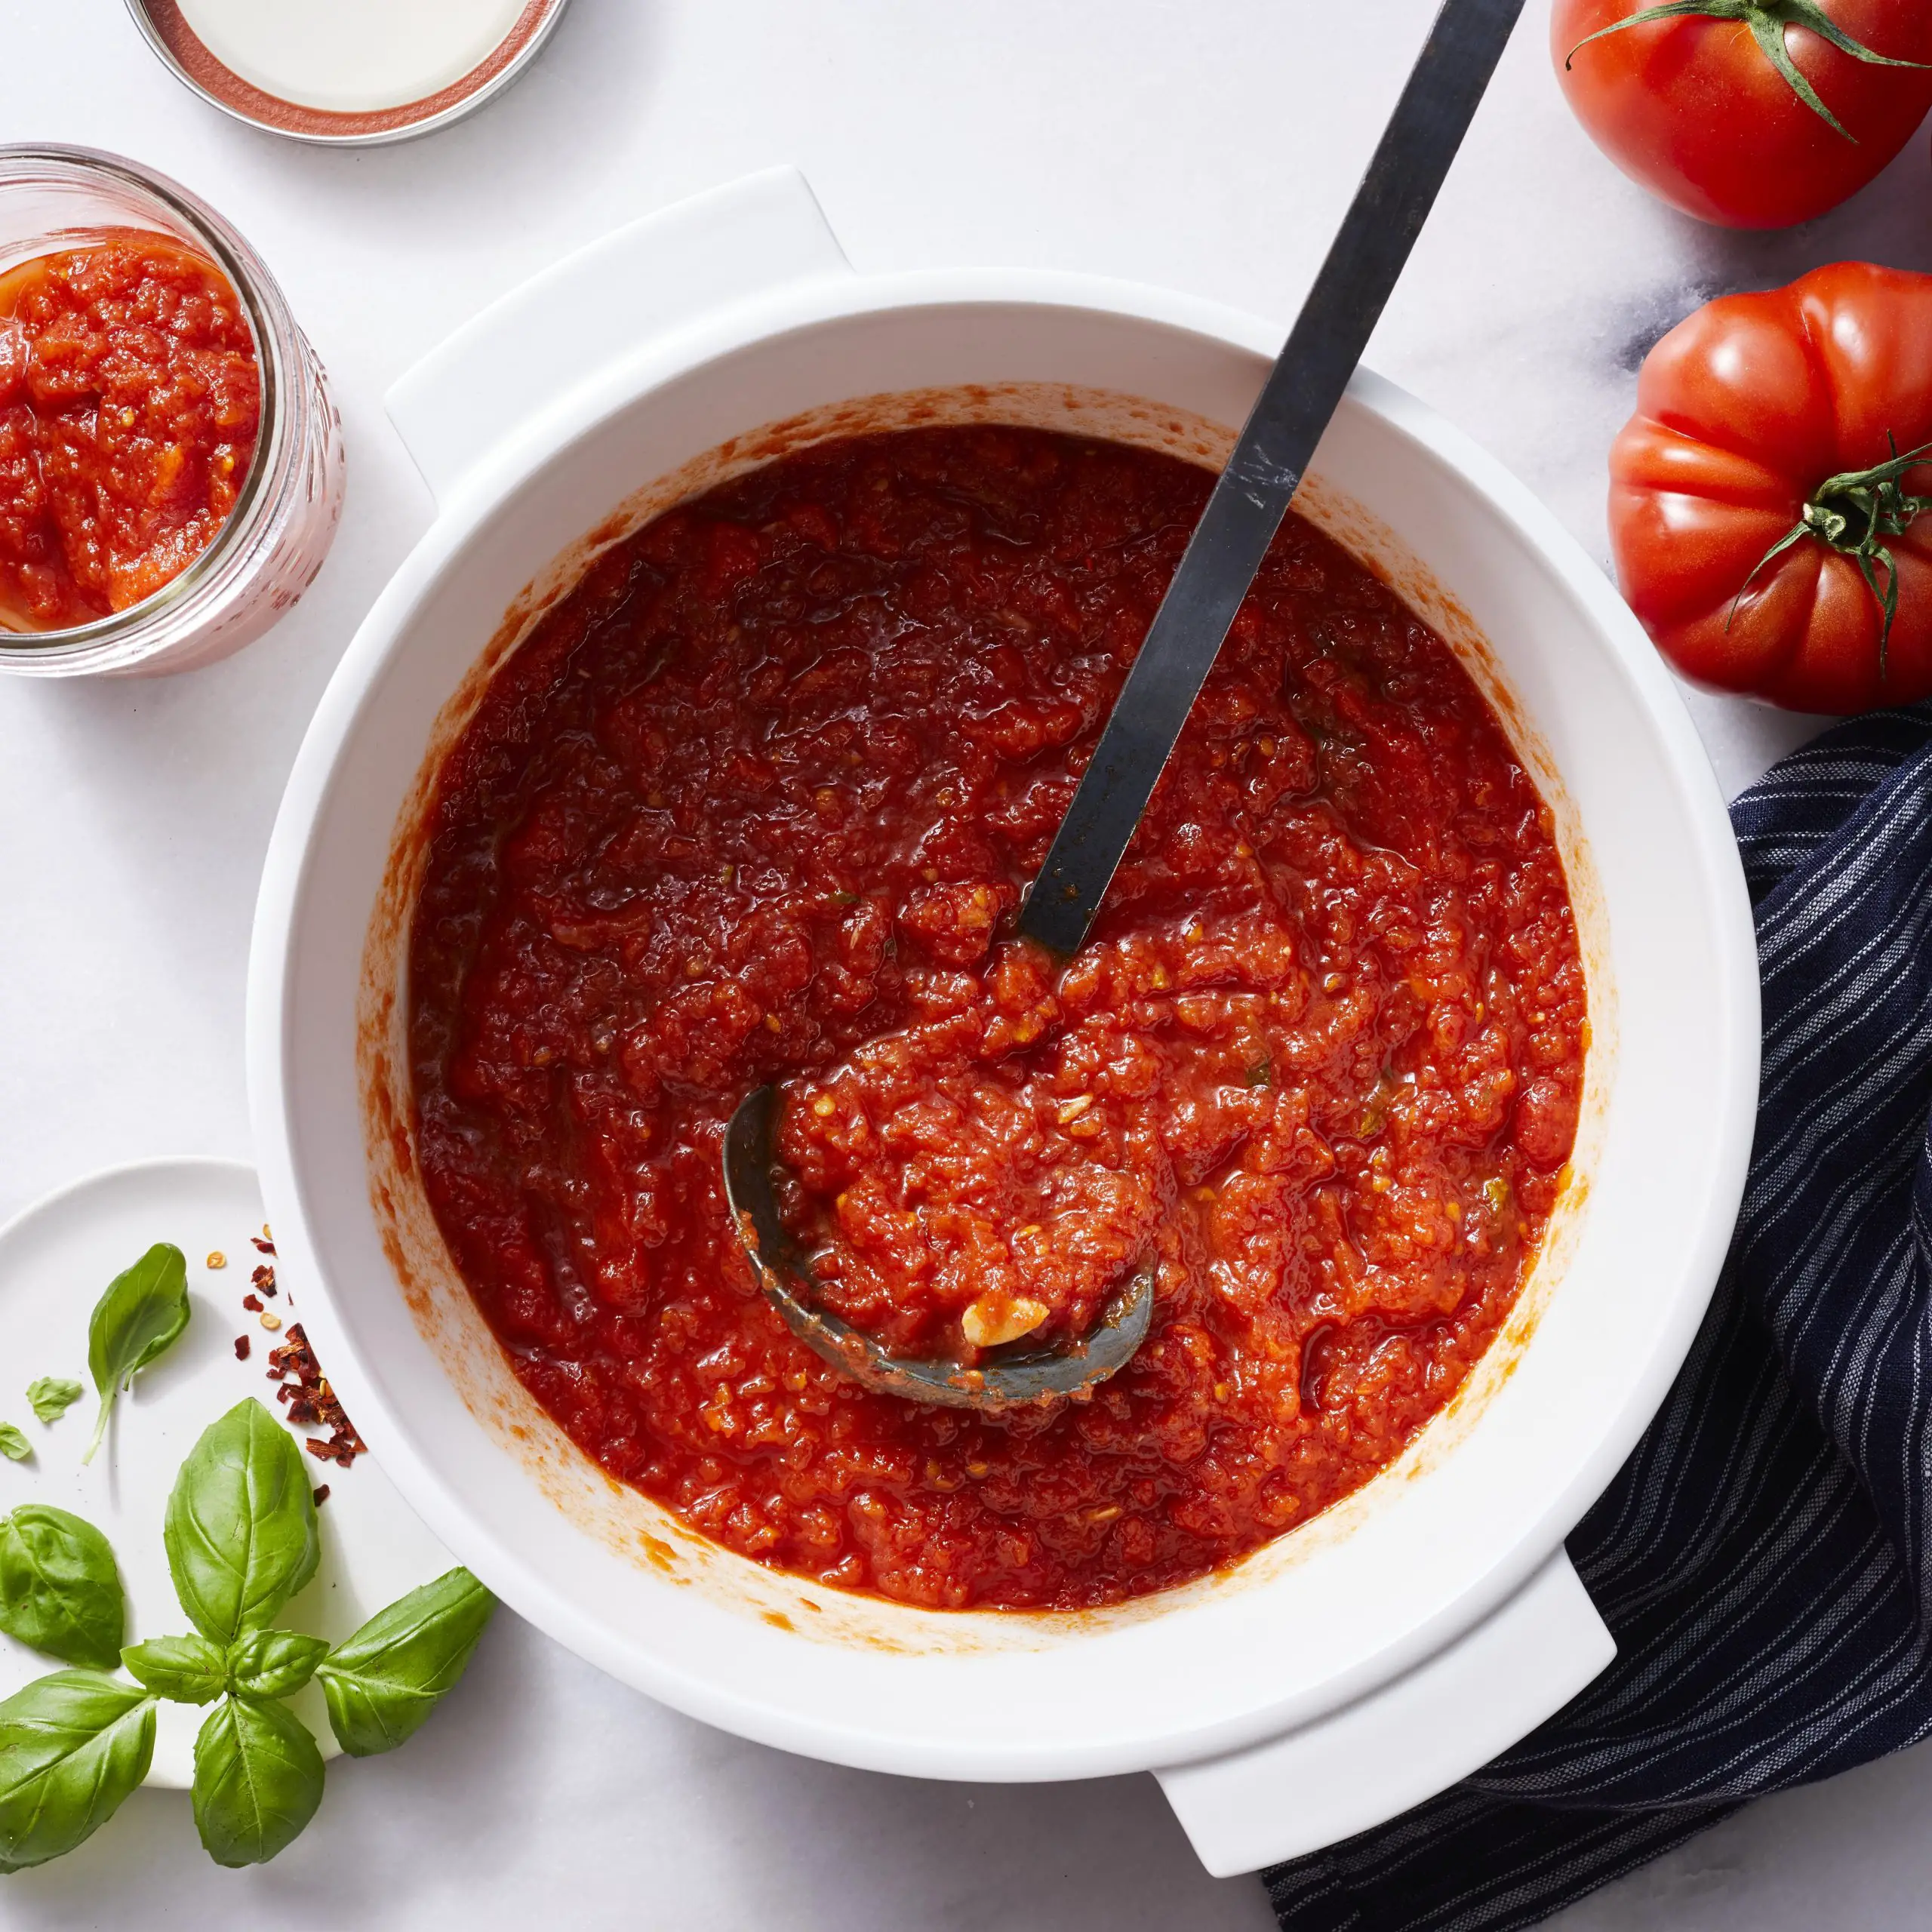 How To Make Spaghetti Sauce Wjrh Tomato Paste : Easy Tomato Pasta Sauce ...